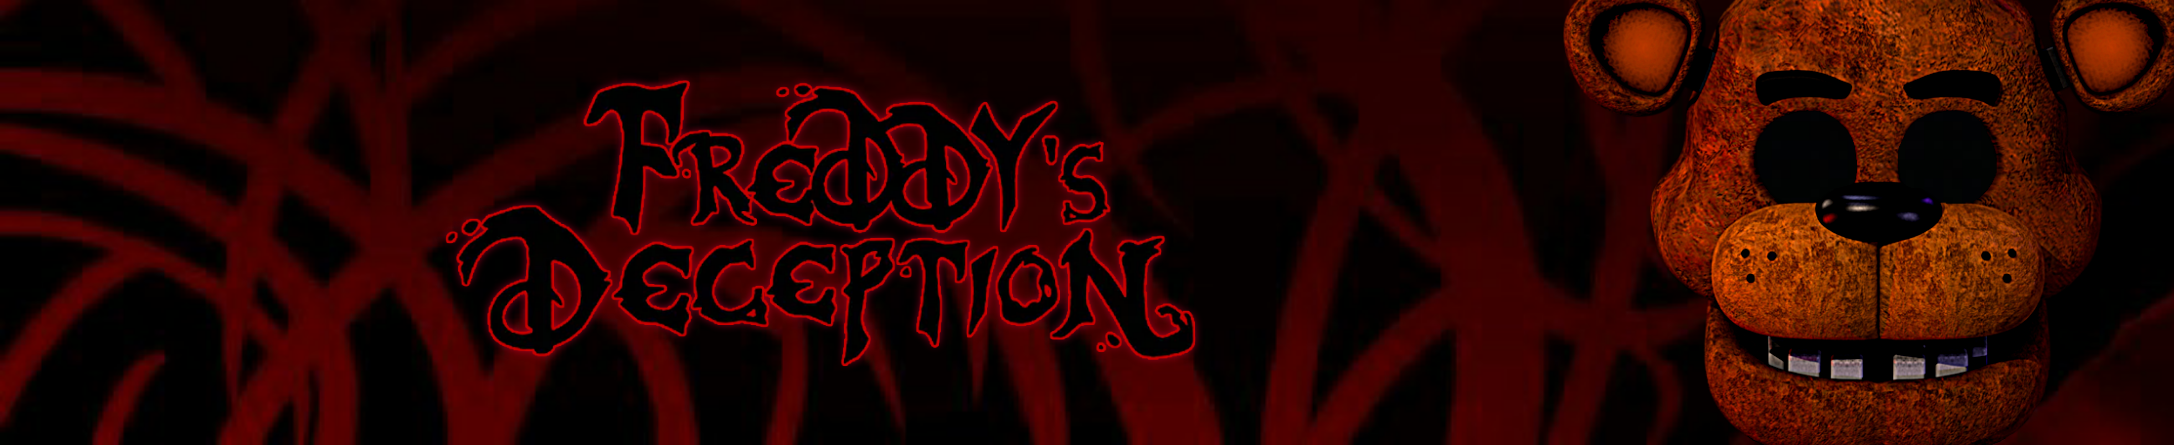 Freddy Deception